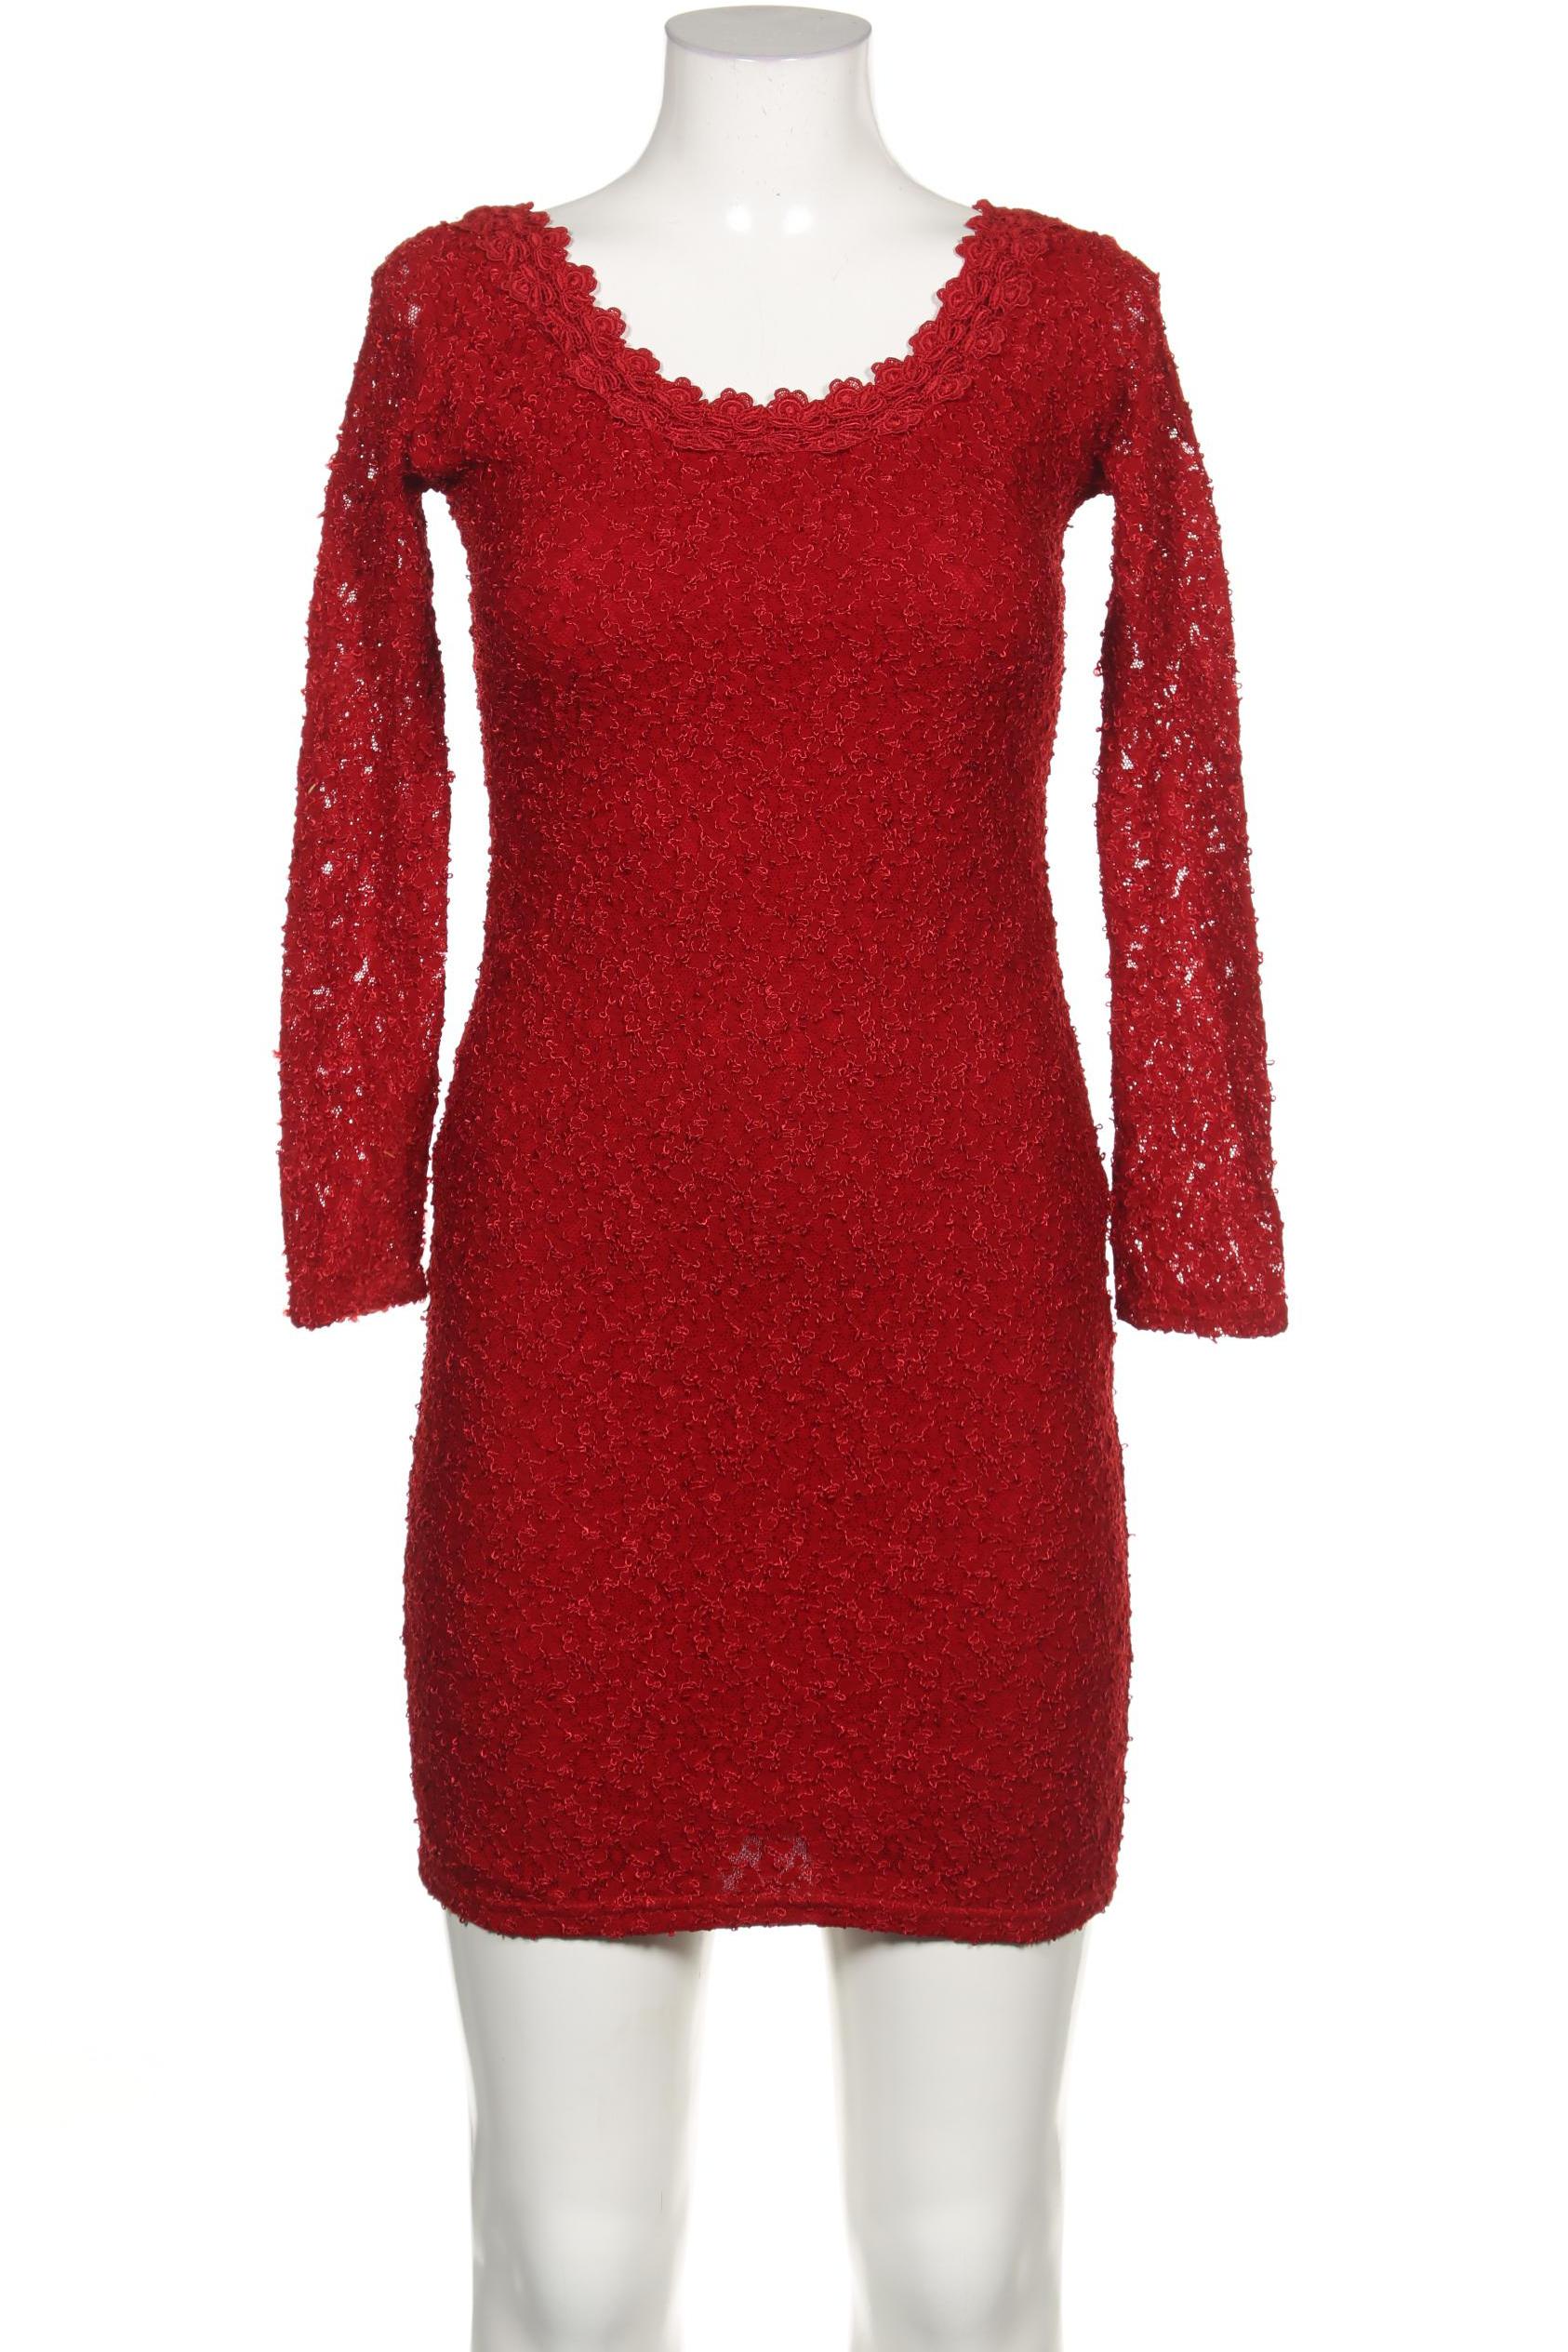 wallis Damen Kleid, rot von Wallis